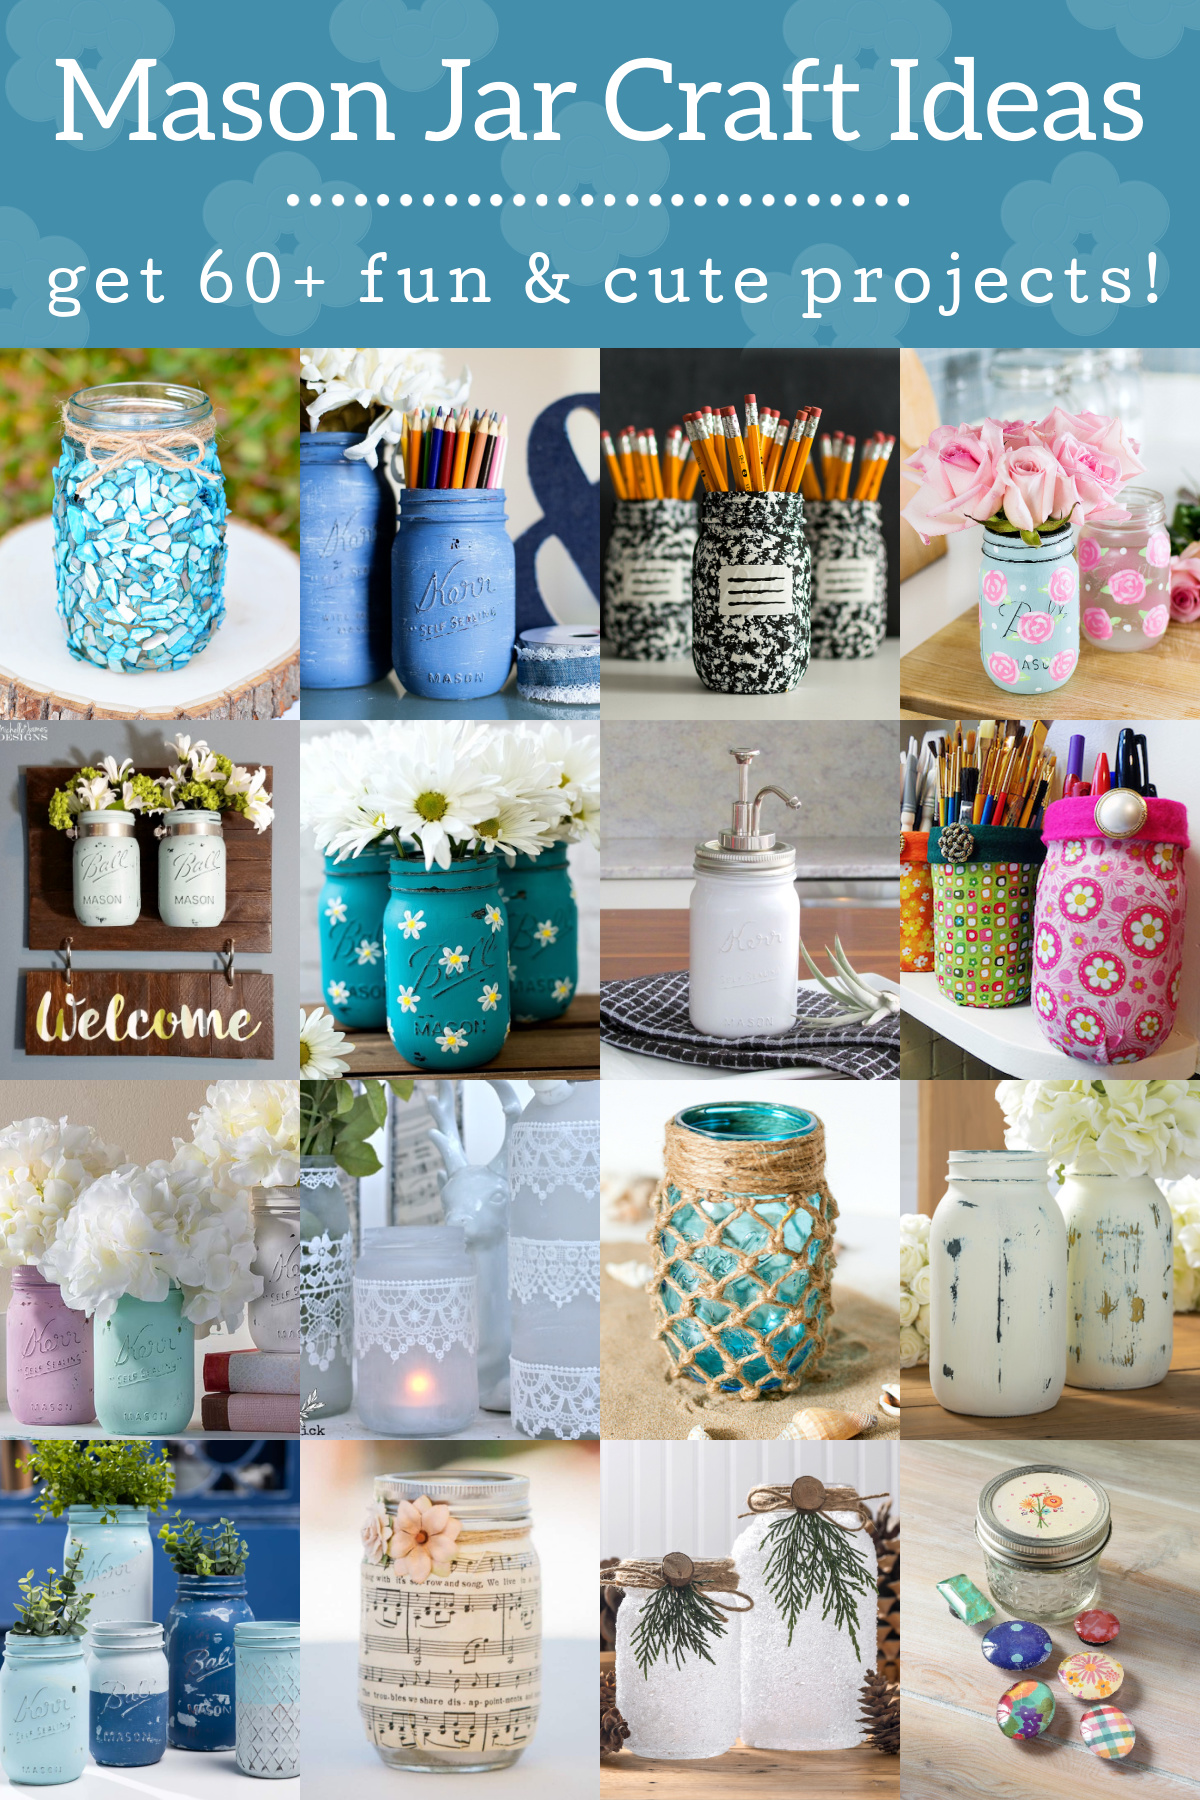 Mason jar craft ideas you'll love